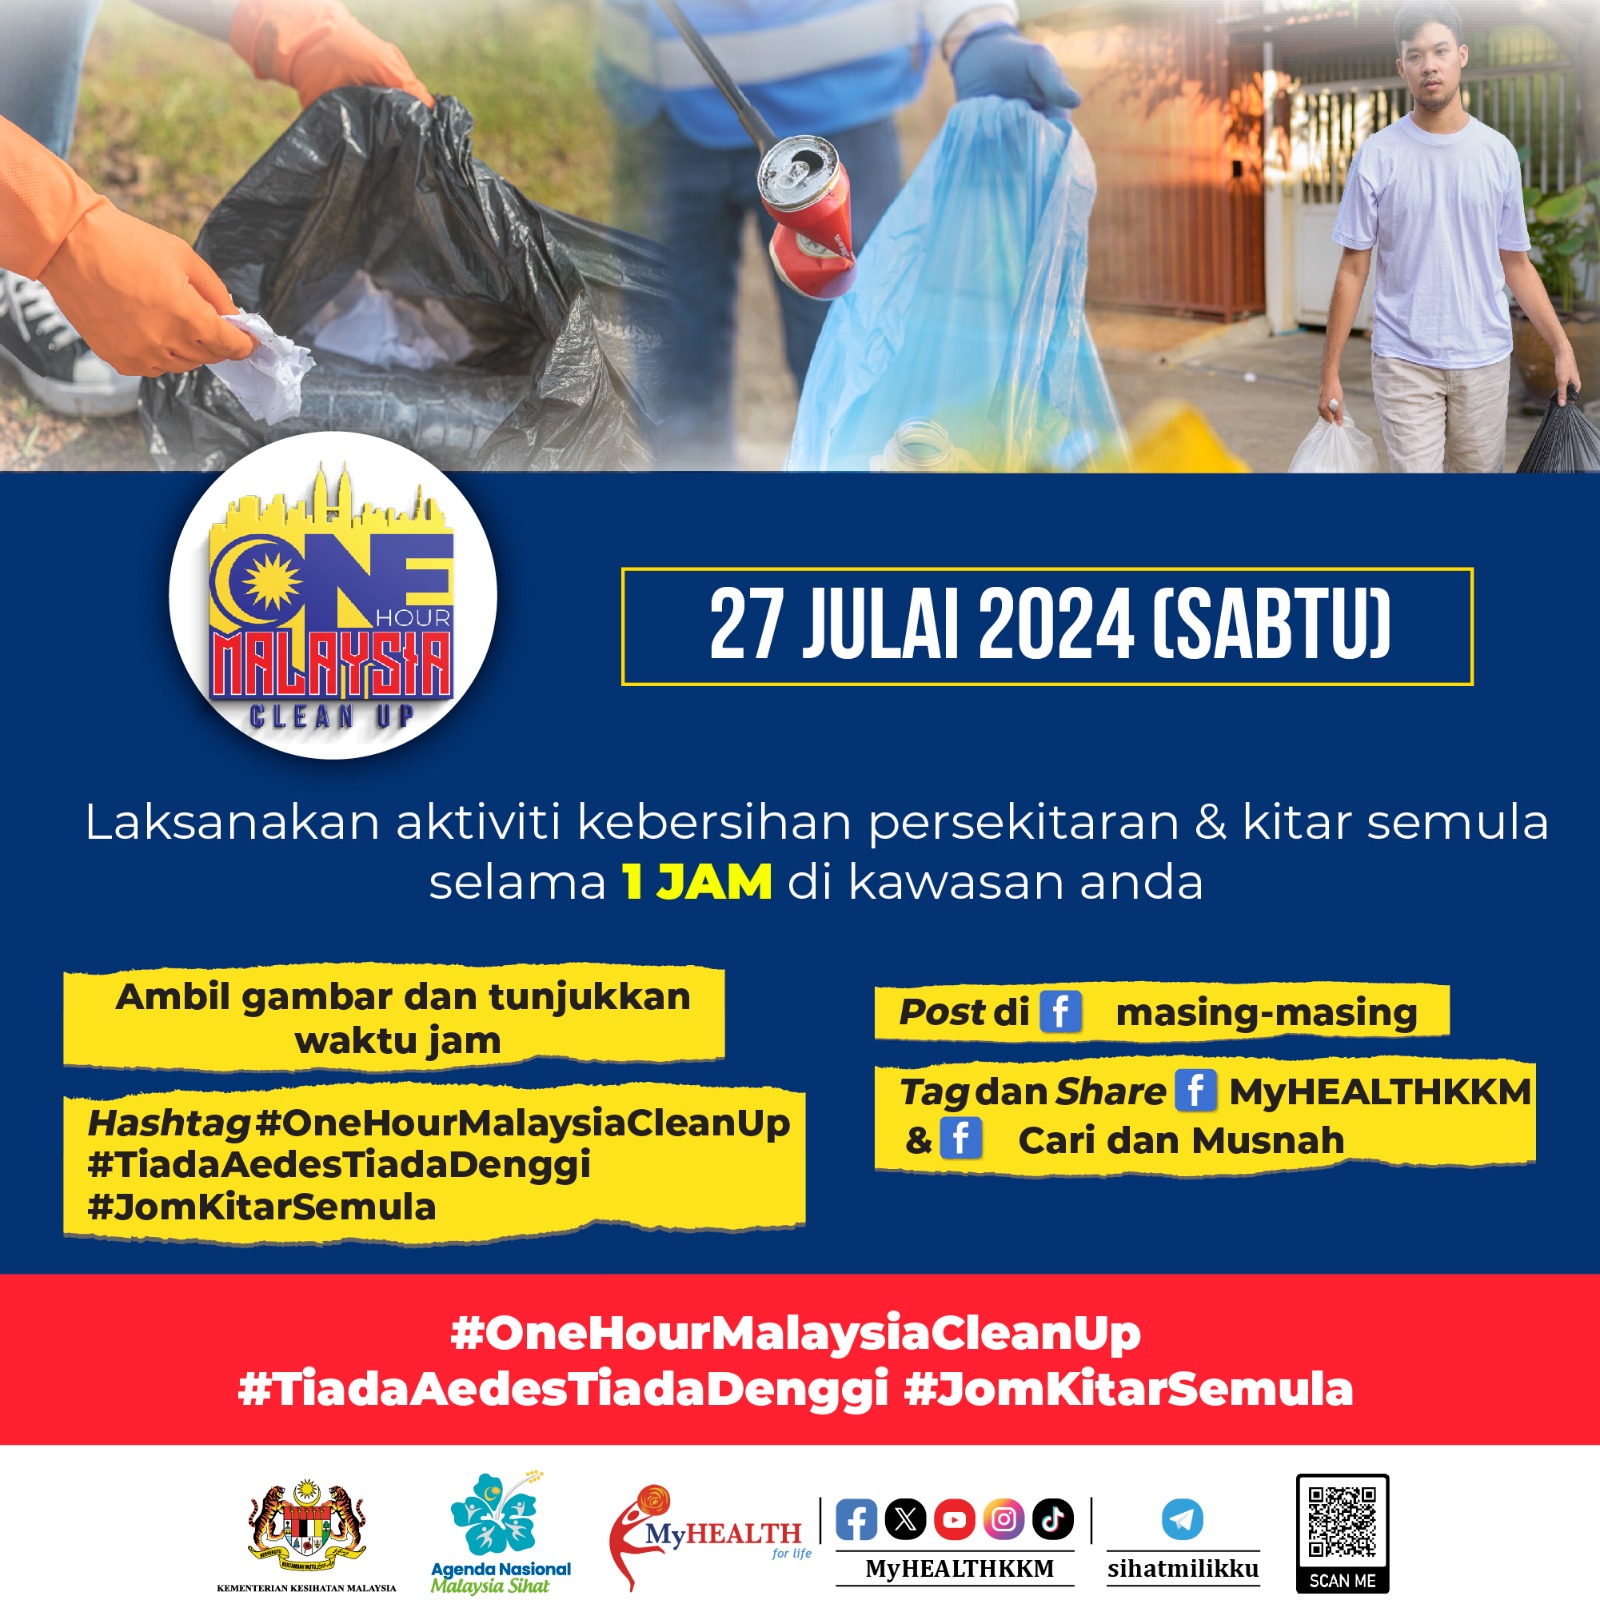 One Hour Malaysia Clean Up: Laksanakan aktiviti kebersihan persekitaran selama 1 jam